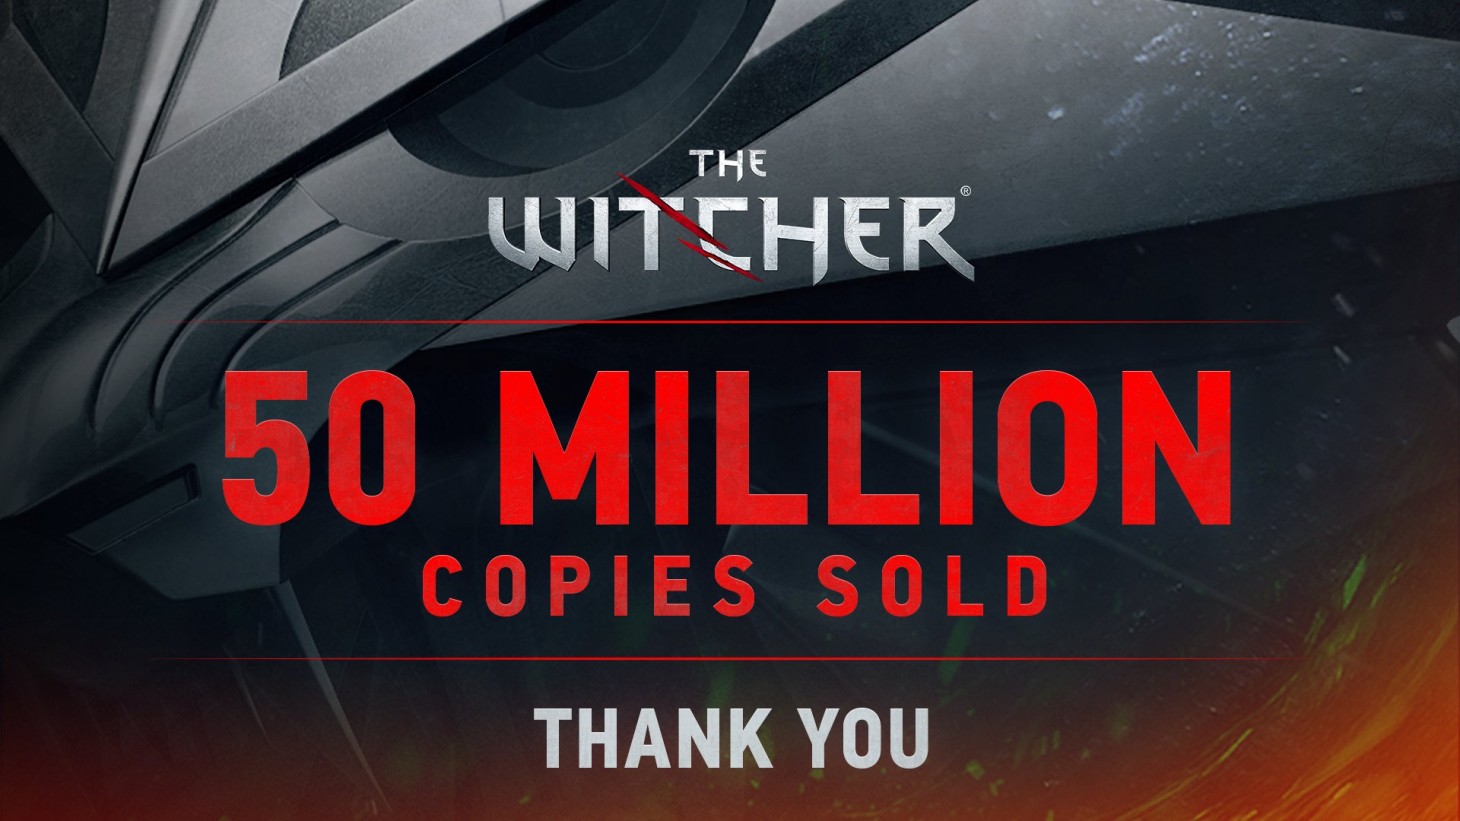 فروش سری ویچر از ۵۰ میلیون نسخه عبور کرد